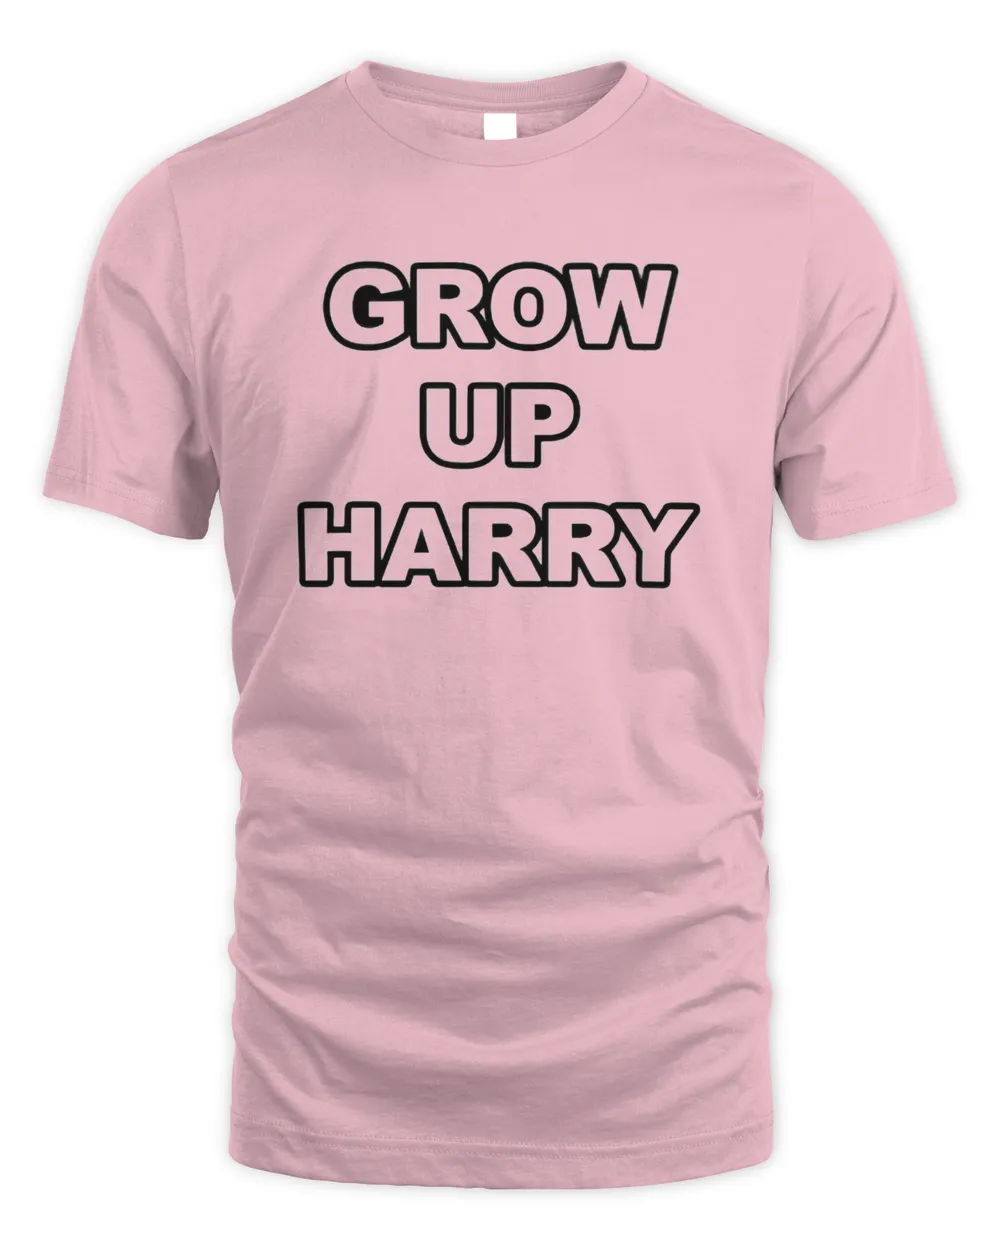 Grow up harry shirt